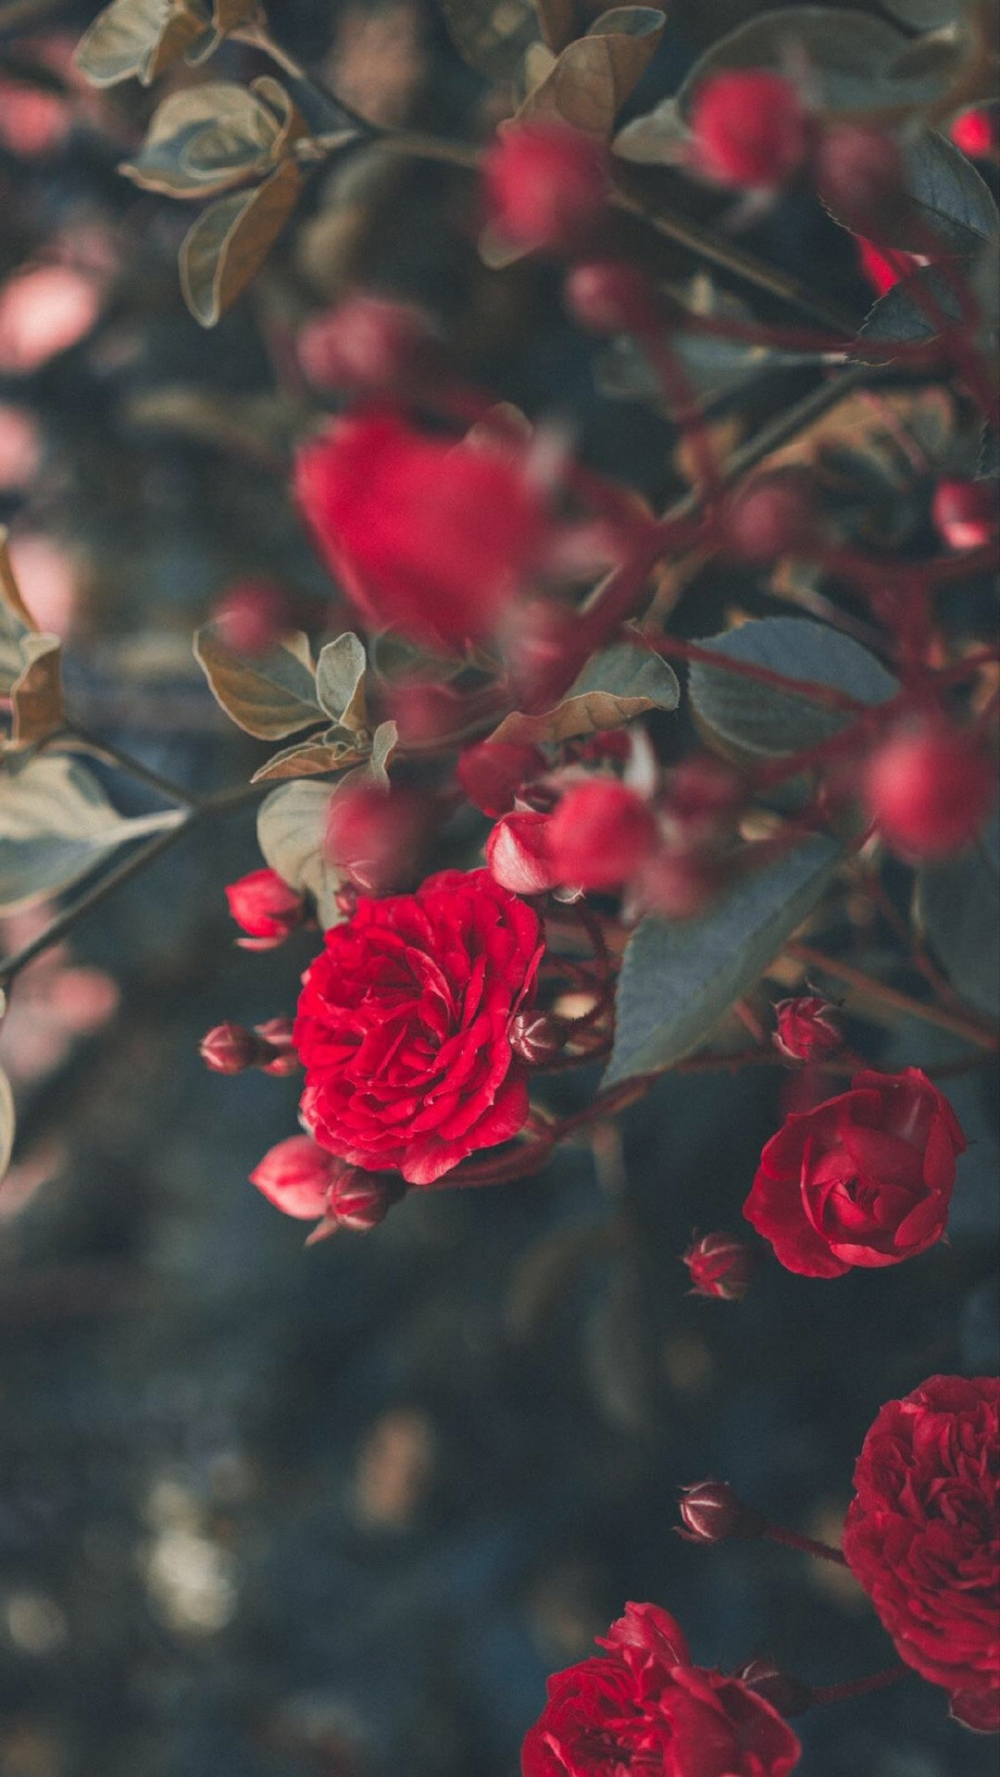 娇艳红玫瑰唯美高清图片欣赏